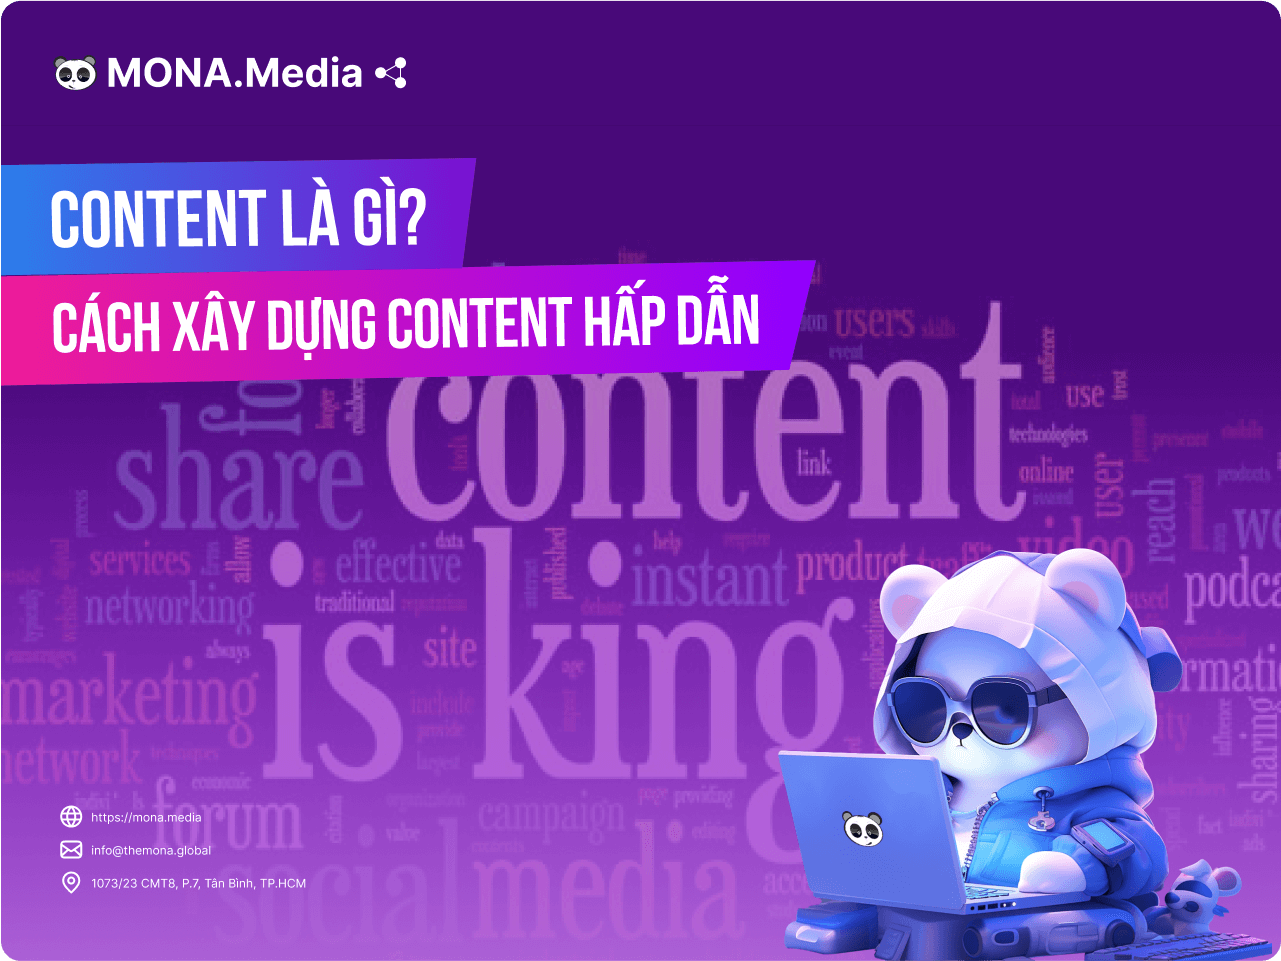 Content là gì? Cách xây dựng content hấp dẫn